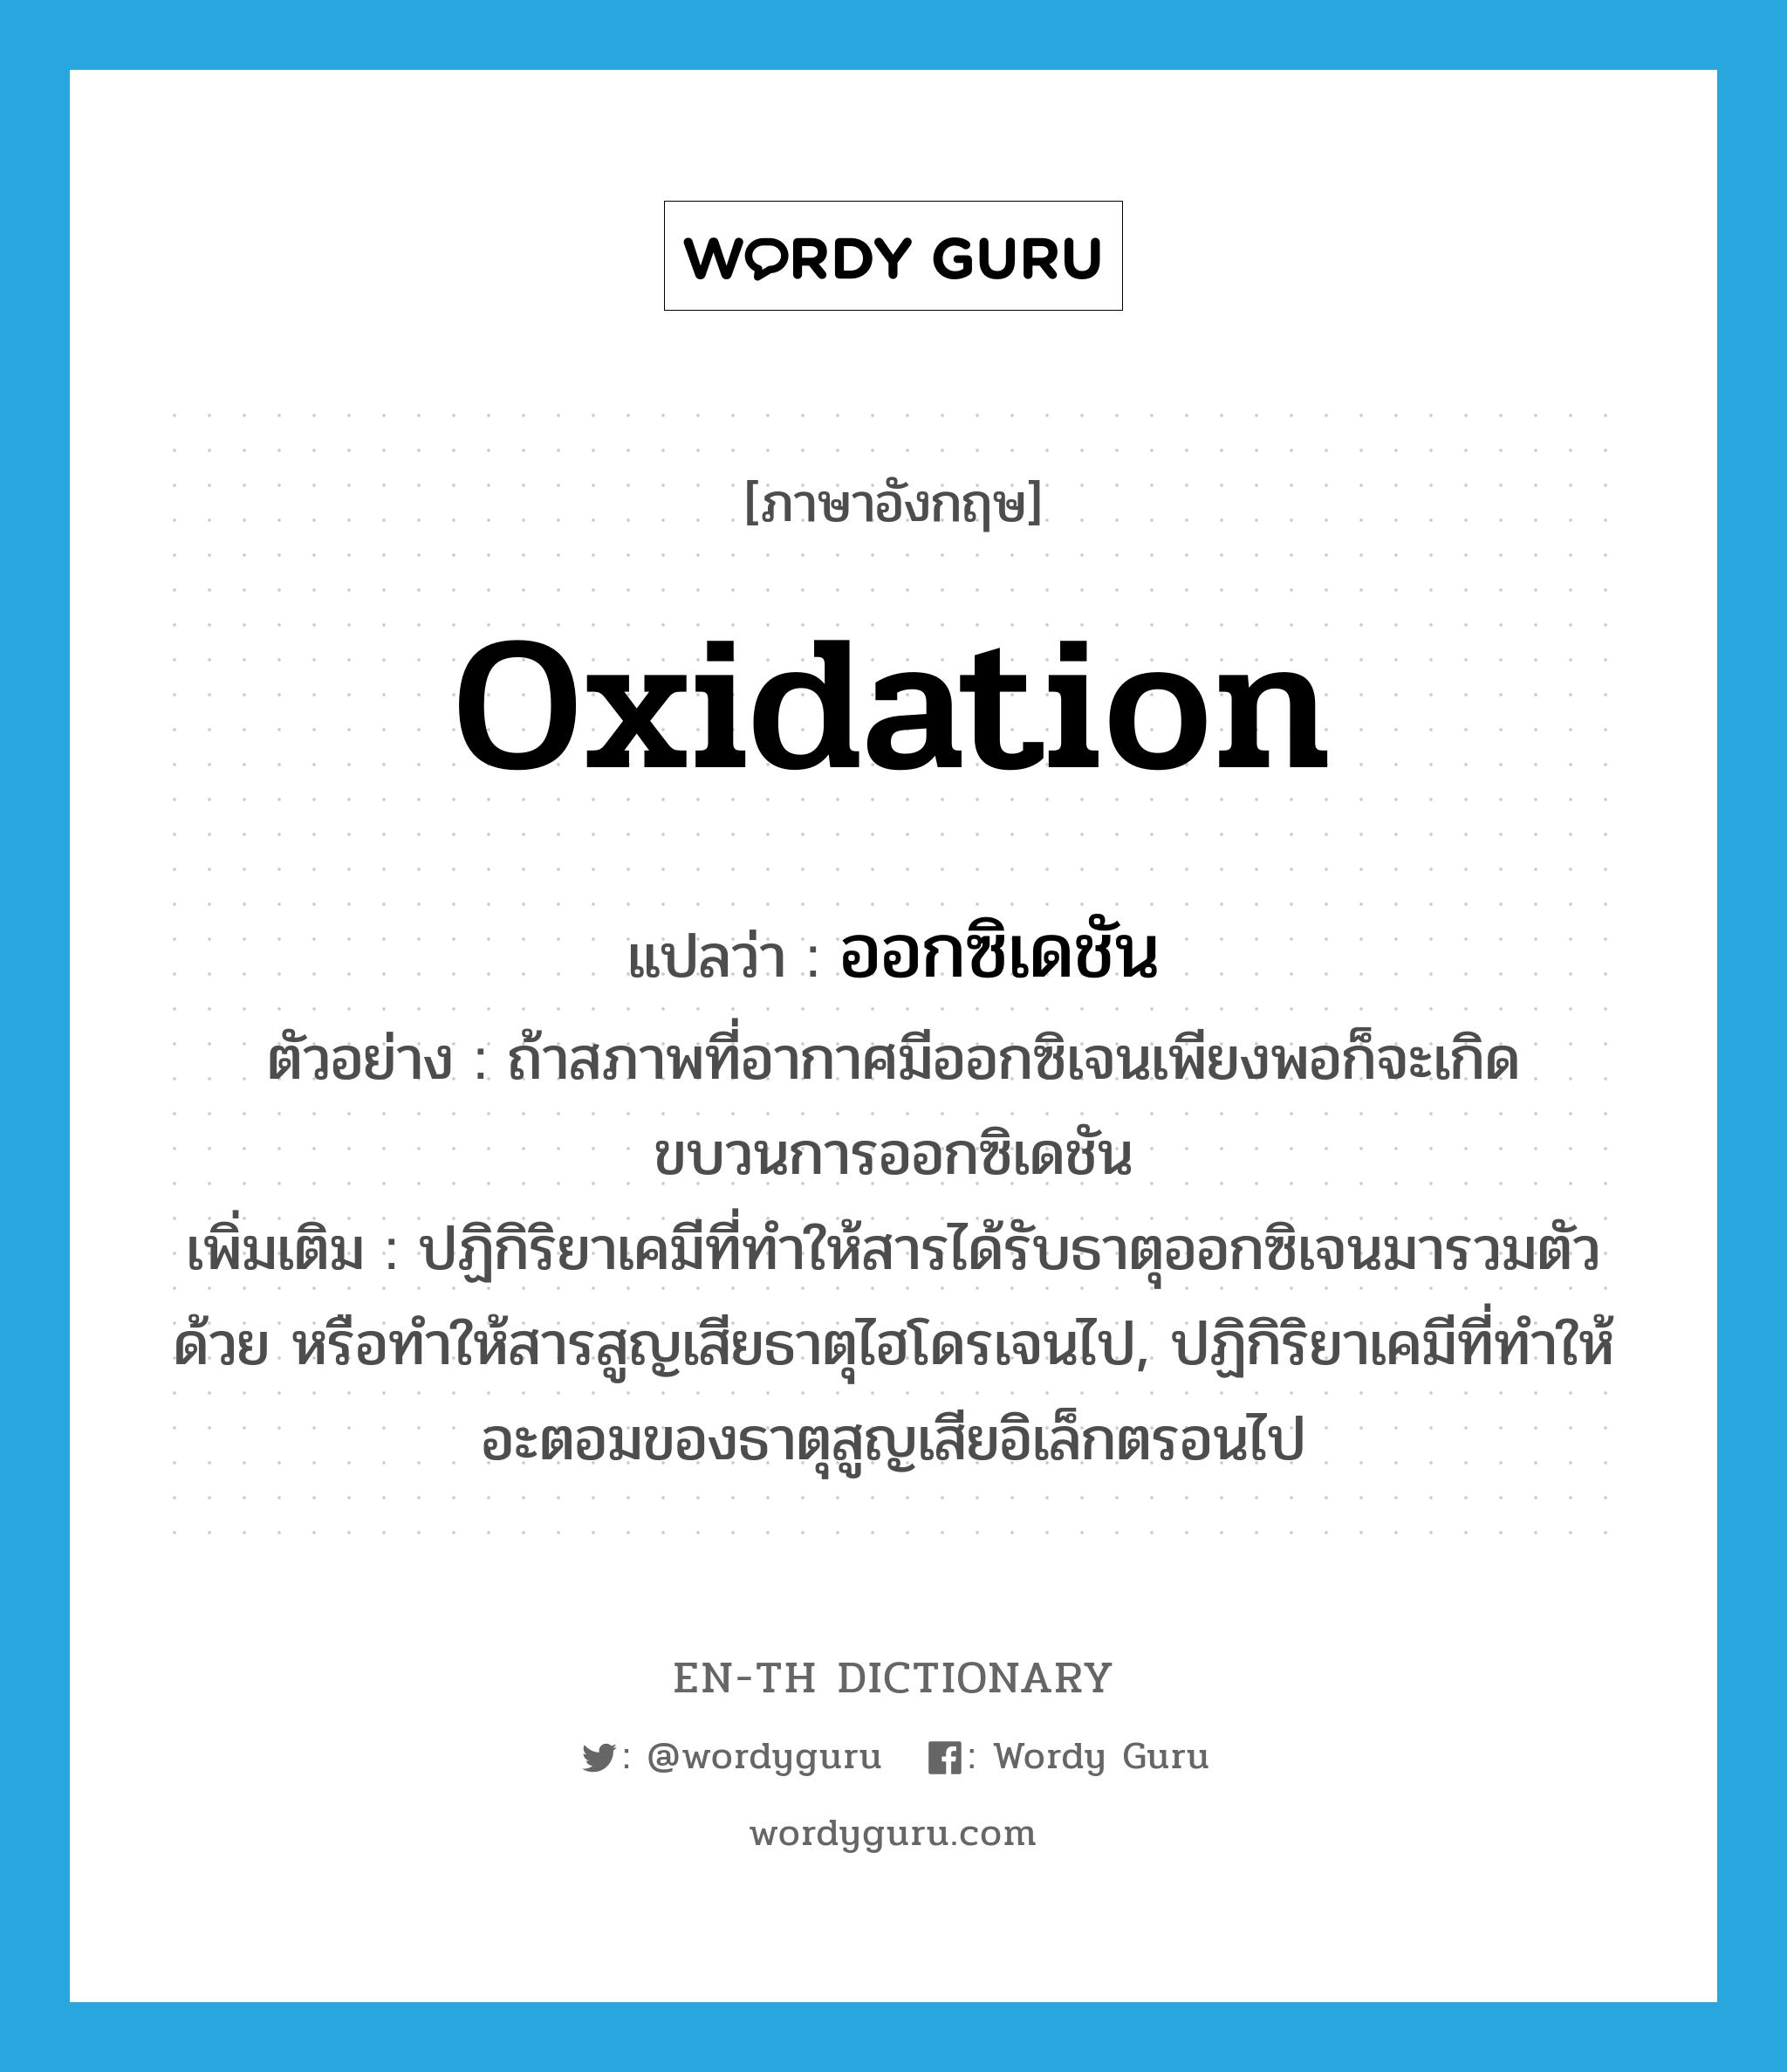 oxidation แปลว่า?, คำศัพท์ภาษาอังกฤษ oxidation แปลว่า ออกซิเดชัน ประเภท N ตัวอย่าง ถ้าสภาพที่อากาศมีออกซิเจนเพียงพอก็จะเกิดขบวนการออกซิเดชัน เพิ่มเติม ปฏิกิริยาเคมีที่ทำให้สารได้รับธาตุออกซิเจนมารวมตัวด้วย หรือทำให้สารสูญเสียธาตุไฮโดรเจนไป, ปฏิกิริยาเคมีที่ทำให้อะตอมของธาตุสูญเสียอิเล็กตรอนไป หมวด N